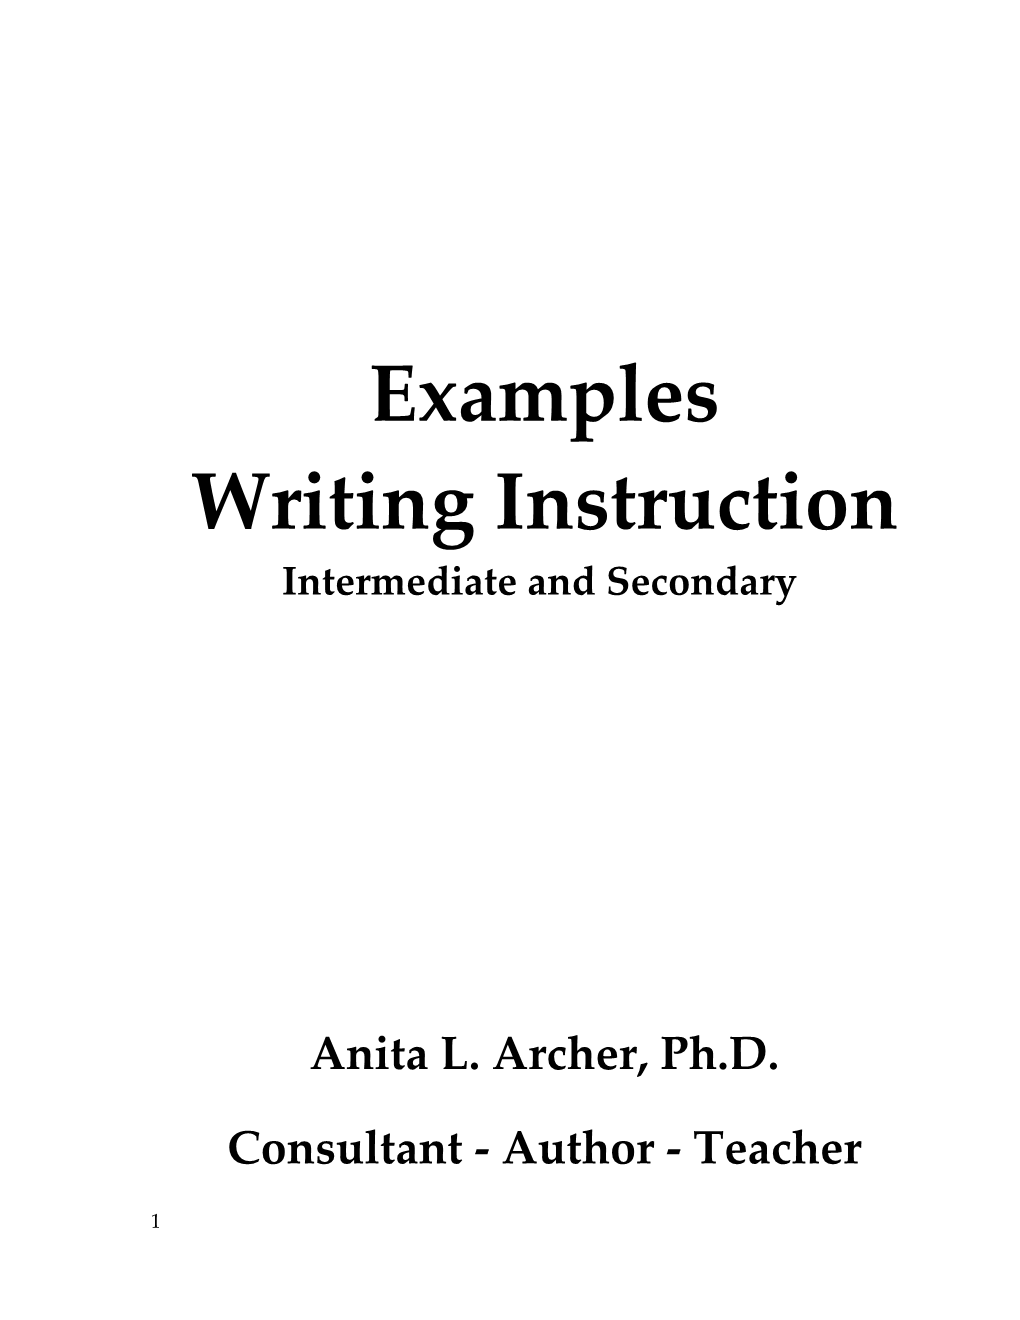 Writing Instruction